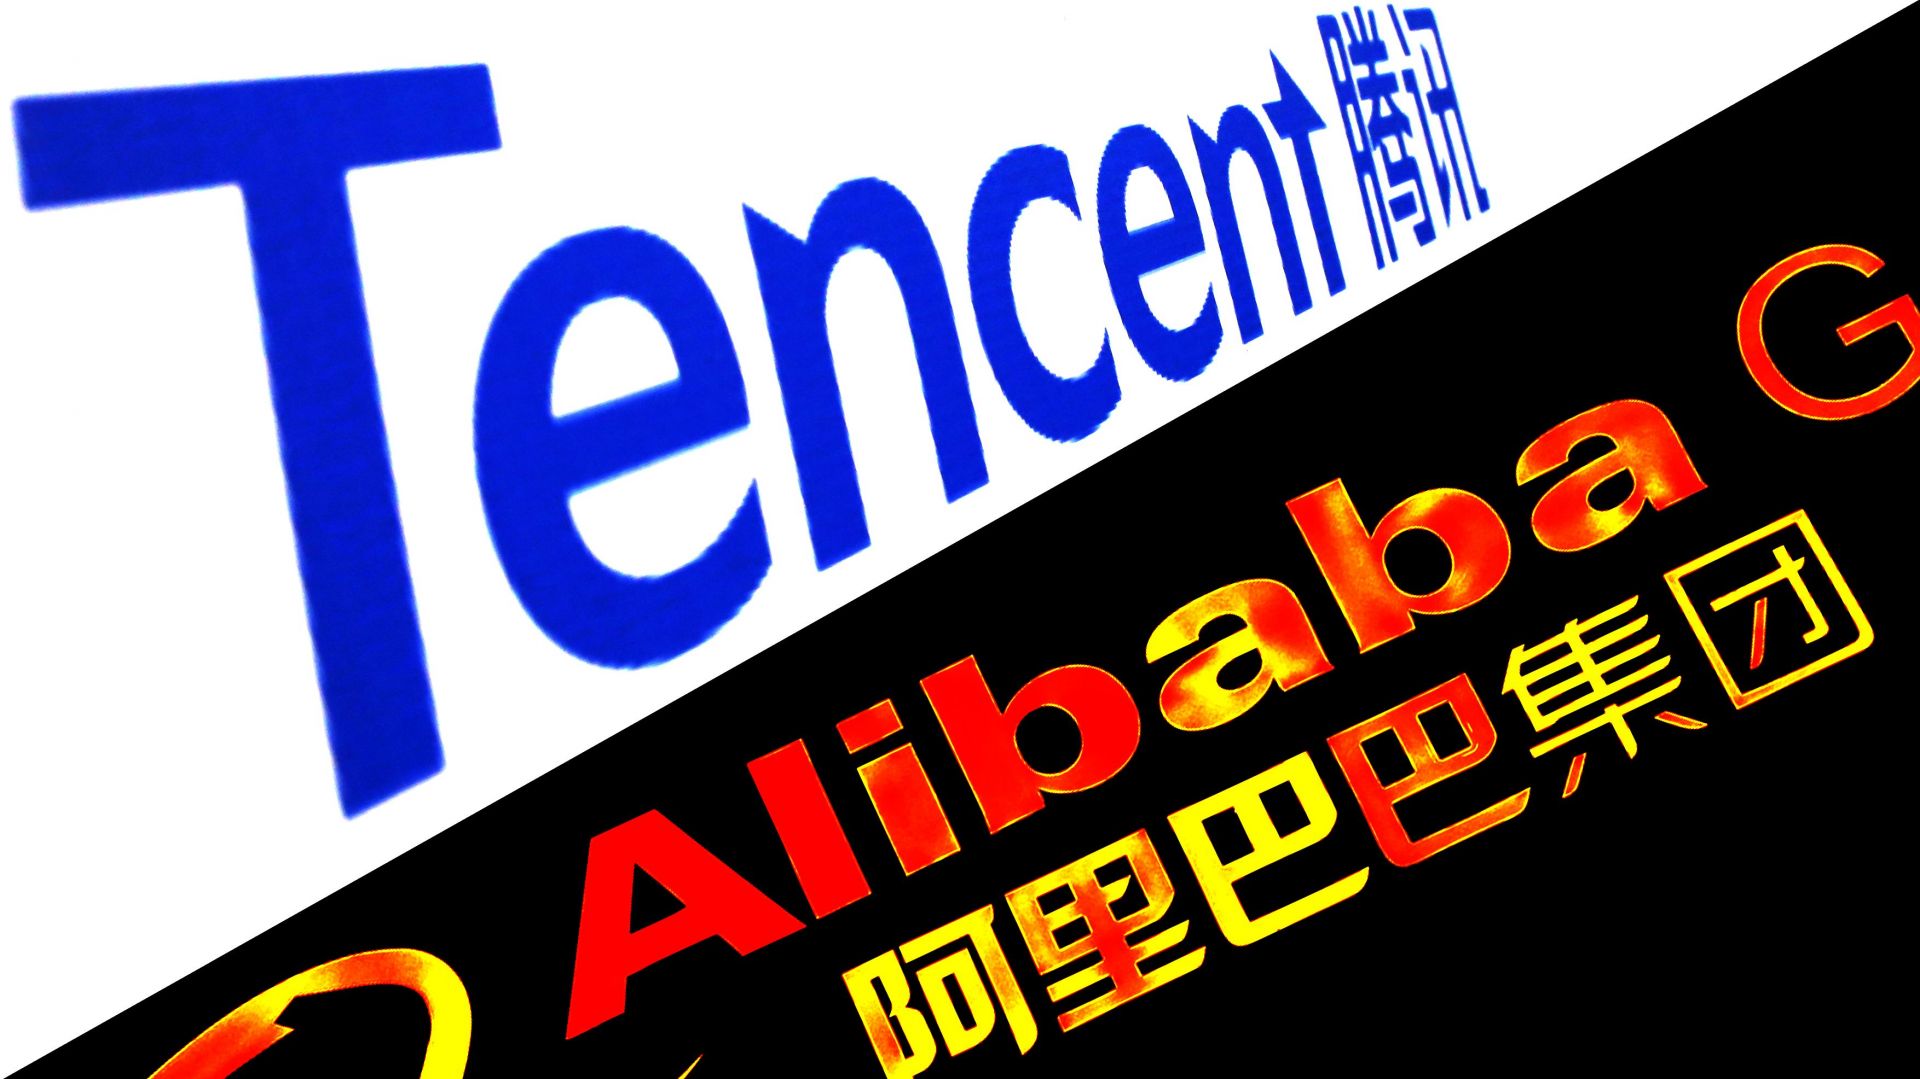 Là hai trong số những mục tiêu nổi bật nhất trong cuộc đàn áp công nghệ của Bắc Kinh, Tencent Holdings và Alibaba Group Holding nằm trong số những công ty phấn khích nhất với hy vọng nới lỏng. Cổ phiếu của cả hai công ty gần đây đã đạt mức cao nhất trong sáu tháng qua. Ảnh: @AFP.